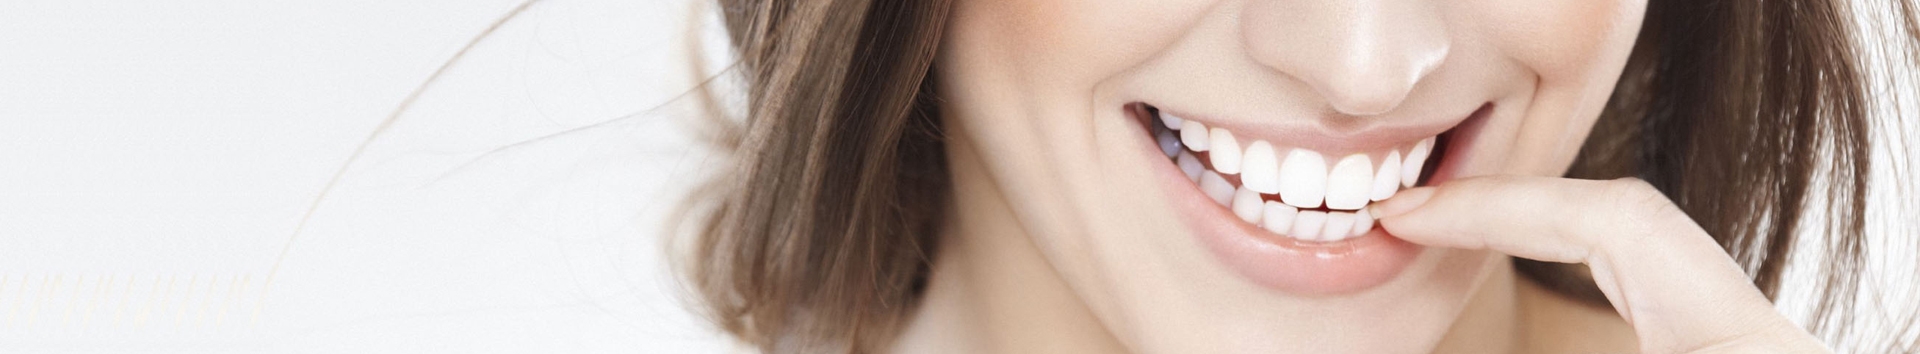 10 dicas rápidas para deixar seu sorriso mais bonito (+ Bônus)